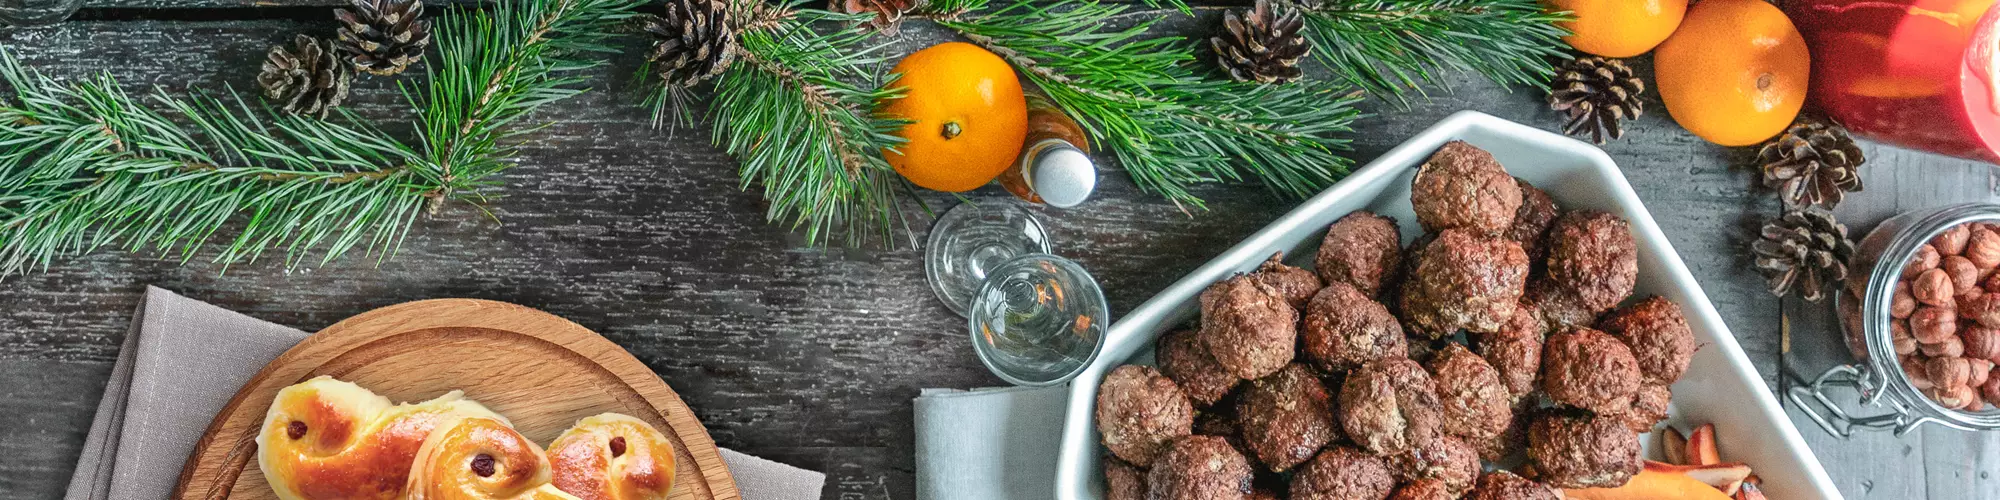 Läskande matbord fotat ovanifrån med julmat, köttbullar, janssons frestelse, bröd och lussebullar